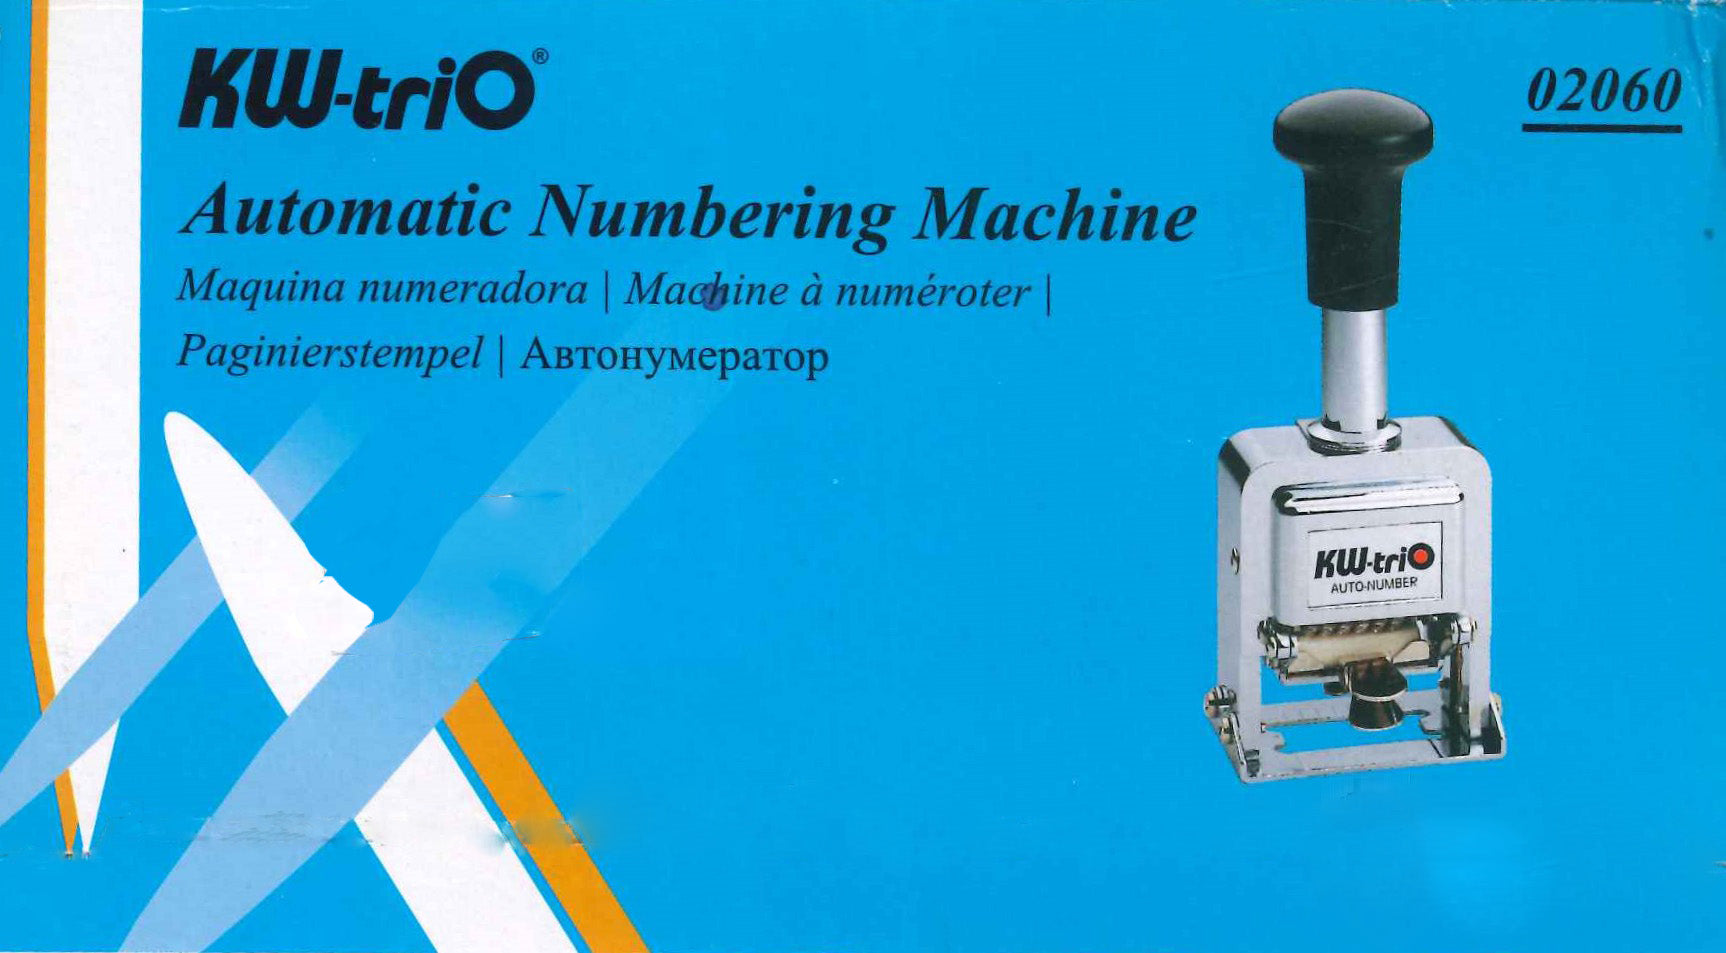 KW-Trio Automatic Numbering Machine 02060 Nejoom Stationery